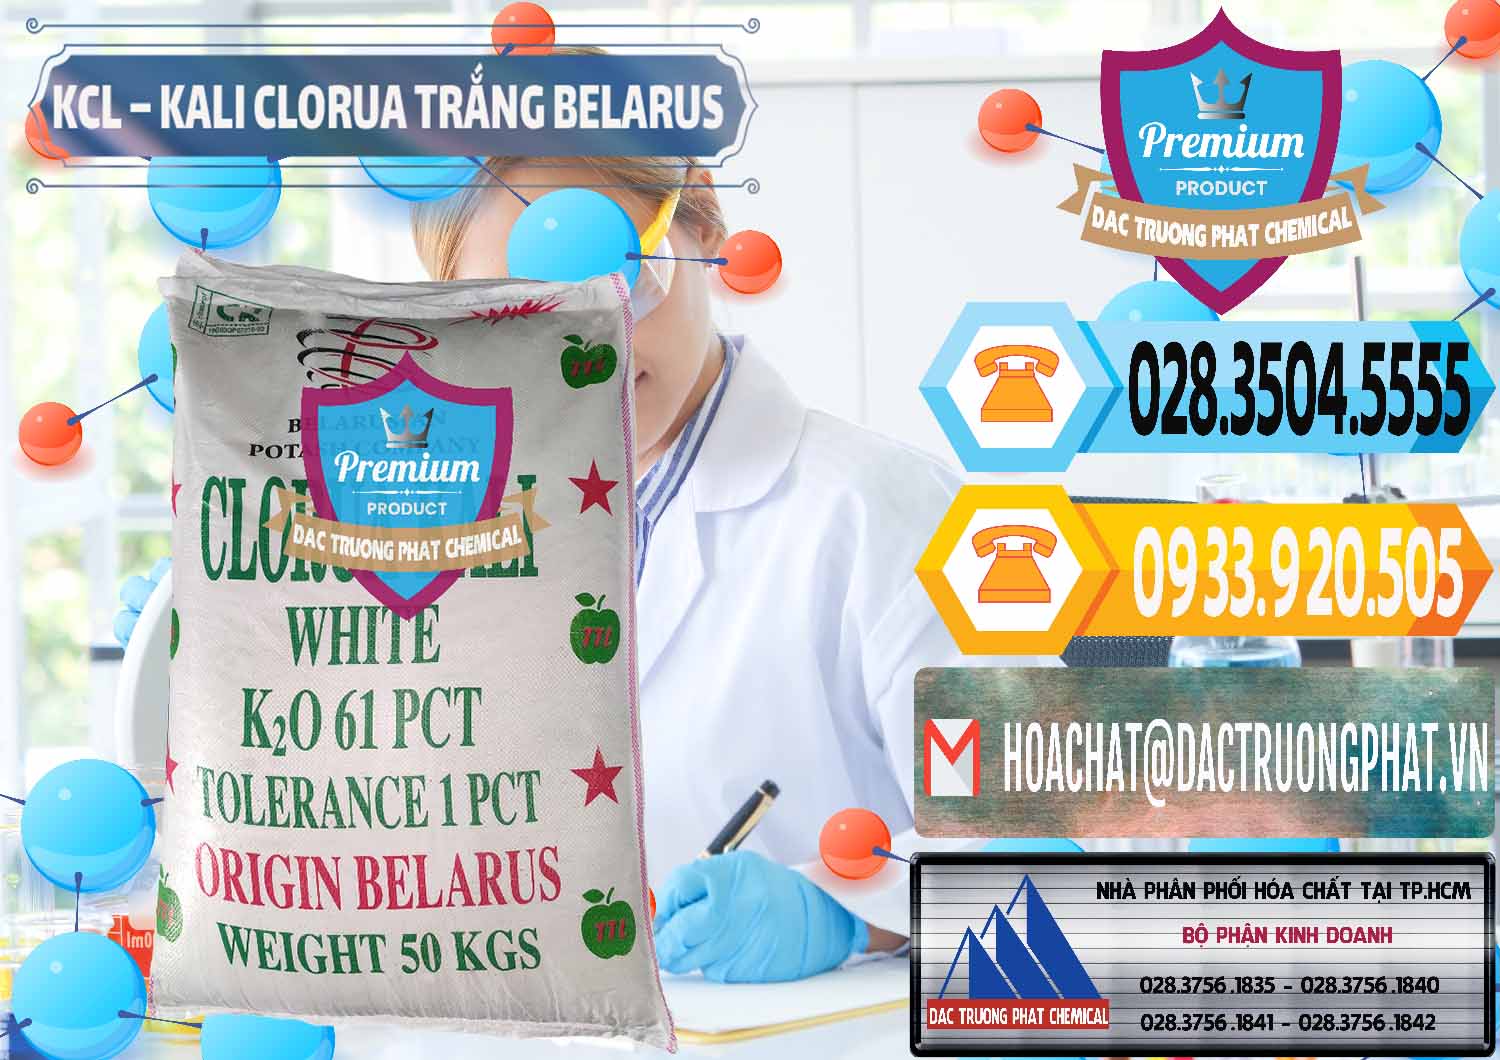 Đơn vị chuyên cung ứng ( bán ) KCL – Kali Clorua Trắng Belarus - 0085 - Cty chuyên cung cấp và nhập khẩu hóa chất tại TP.HCM - hoachattayrua.net